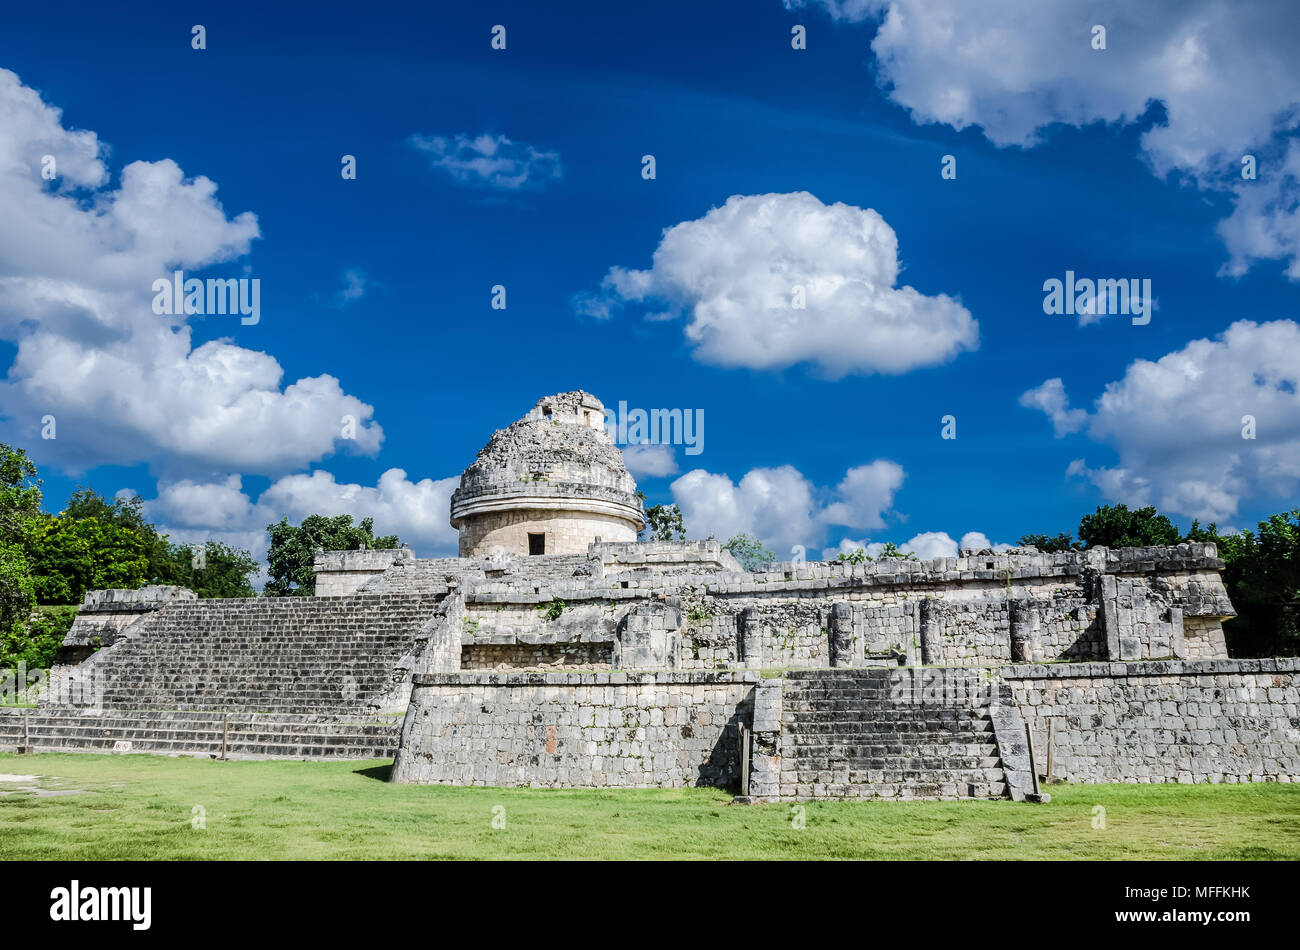 Uno de los notables monumentos en el sitio arqueológico de Chichén Itzá, maravilla del mundo. Foto de stock